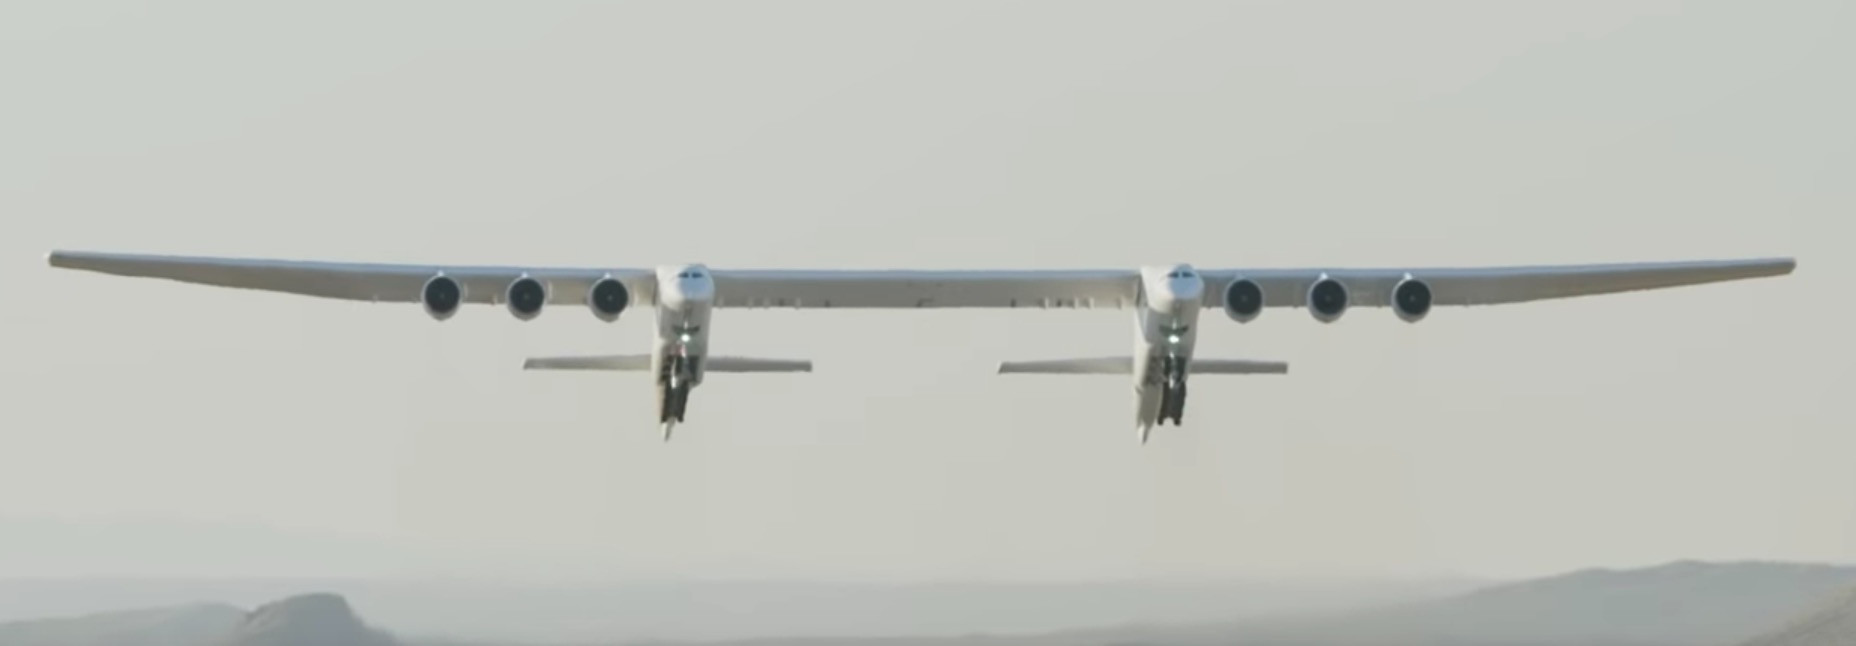 Η παρθενική πτήση του μεγαλύτερου αεροπλάνου στον κόσμο [Βίντεο]